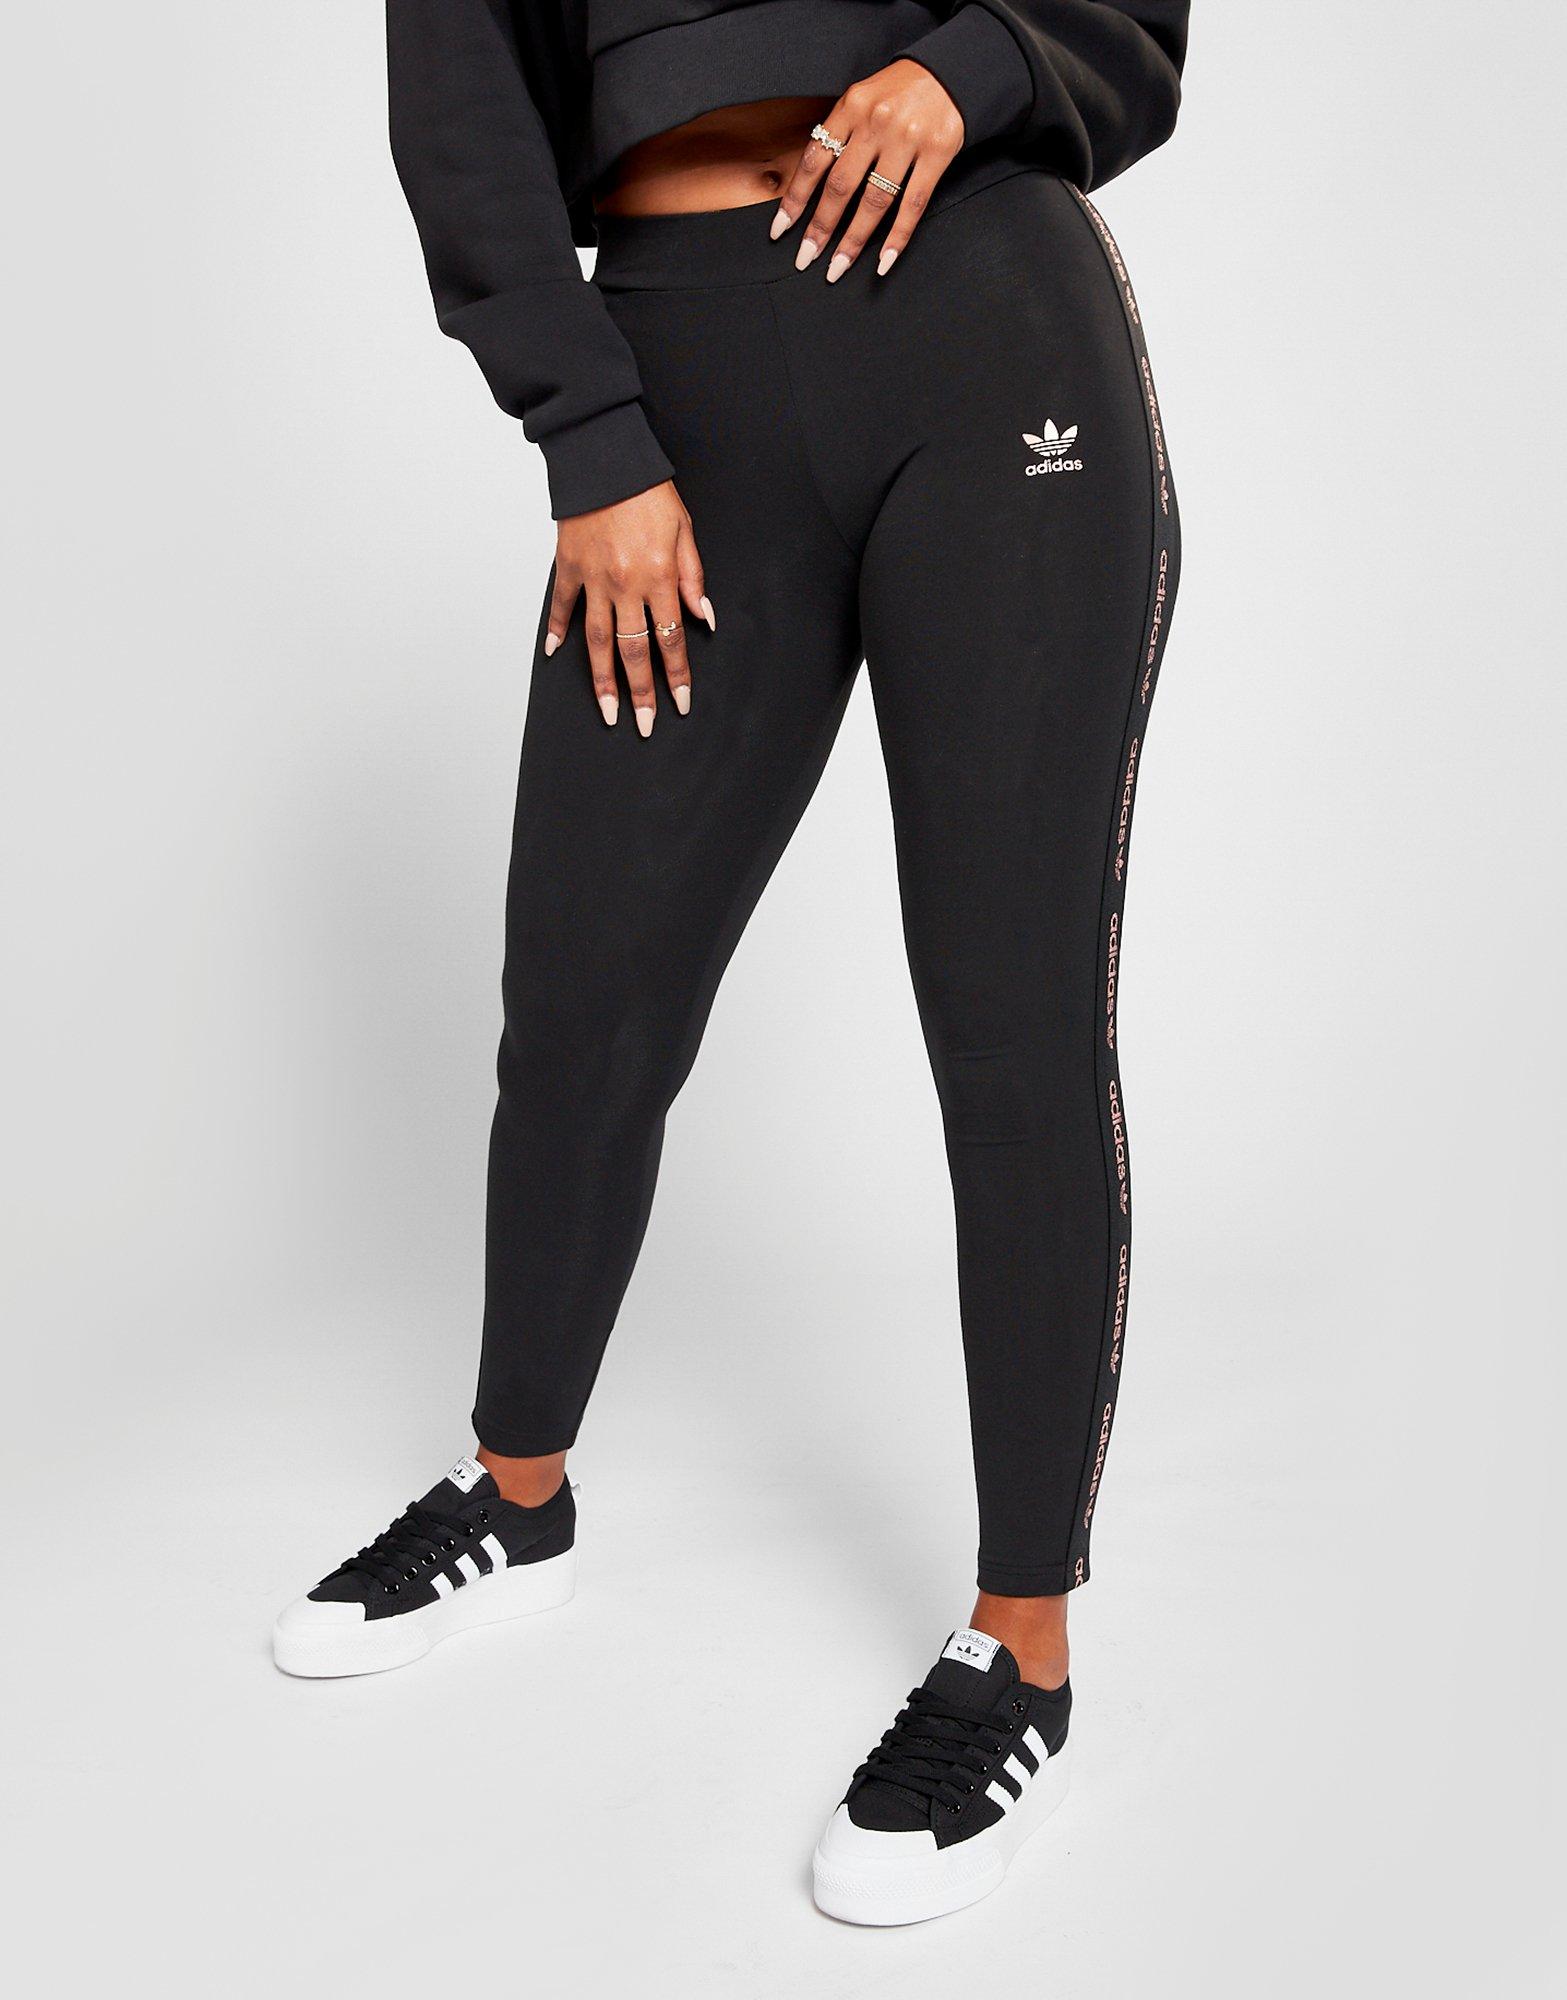 black adidas leggings womens